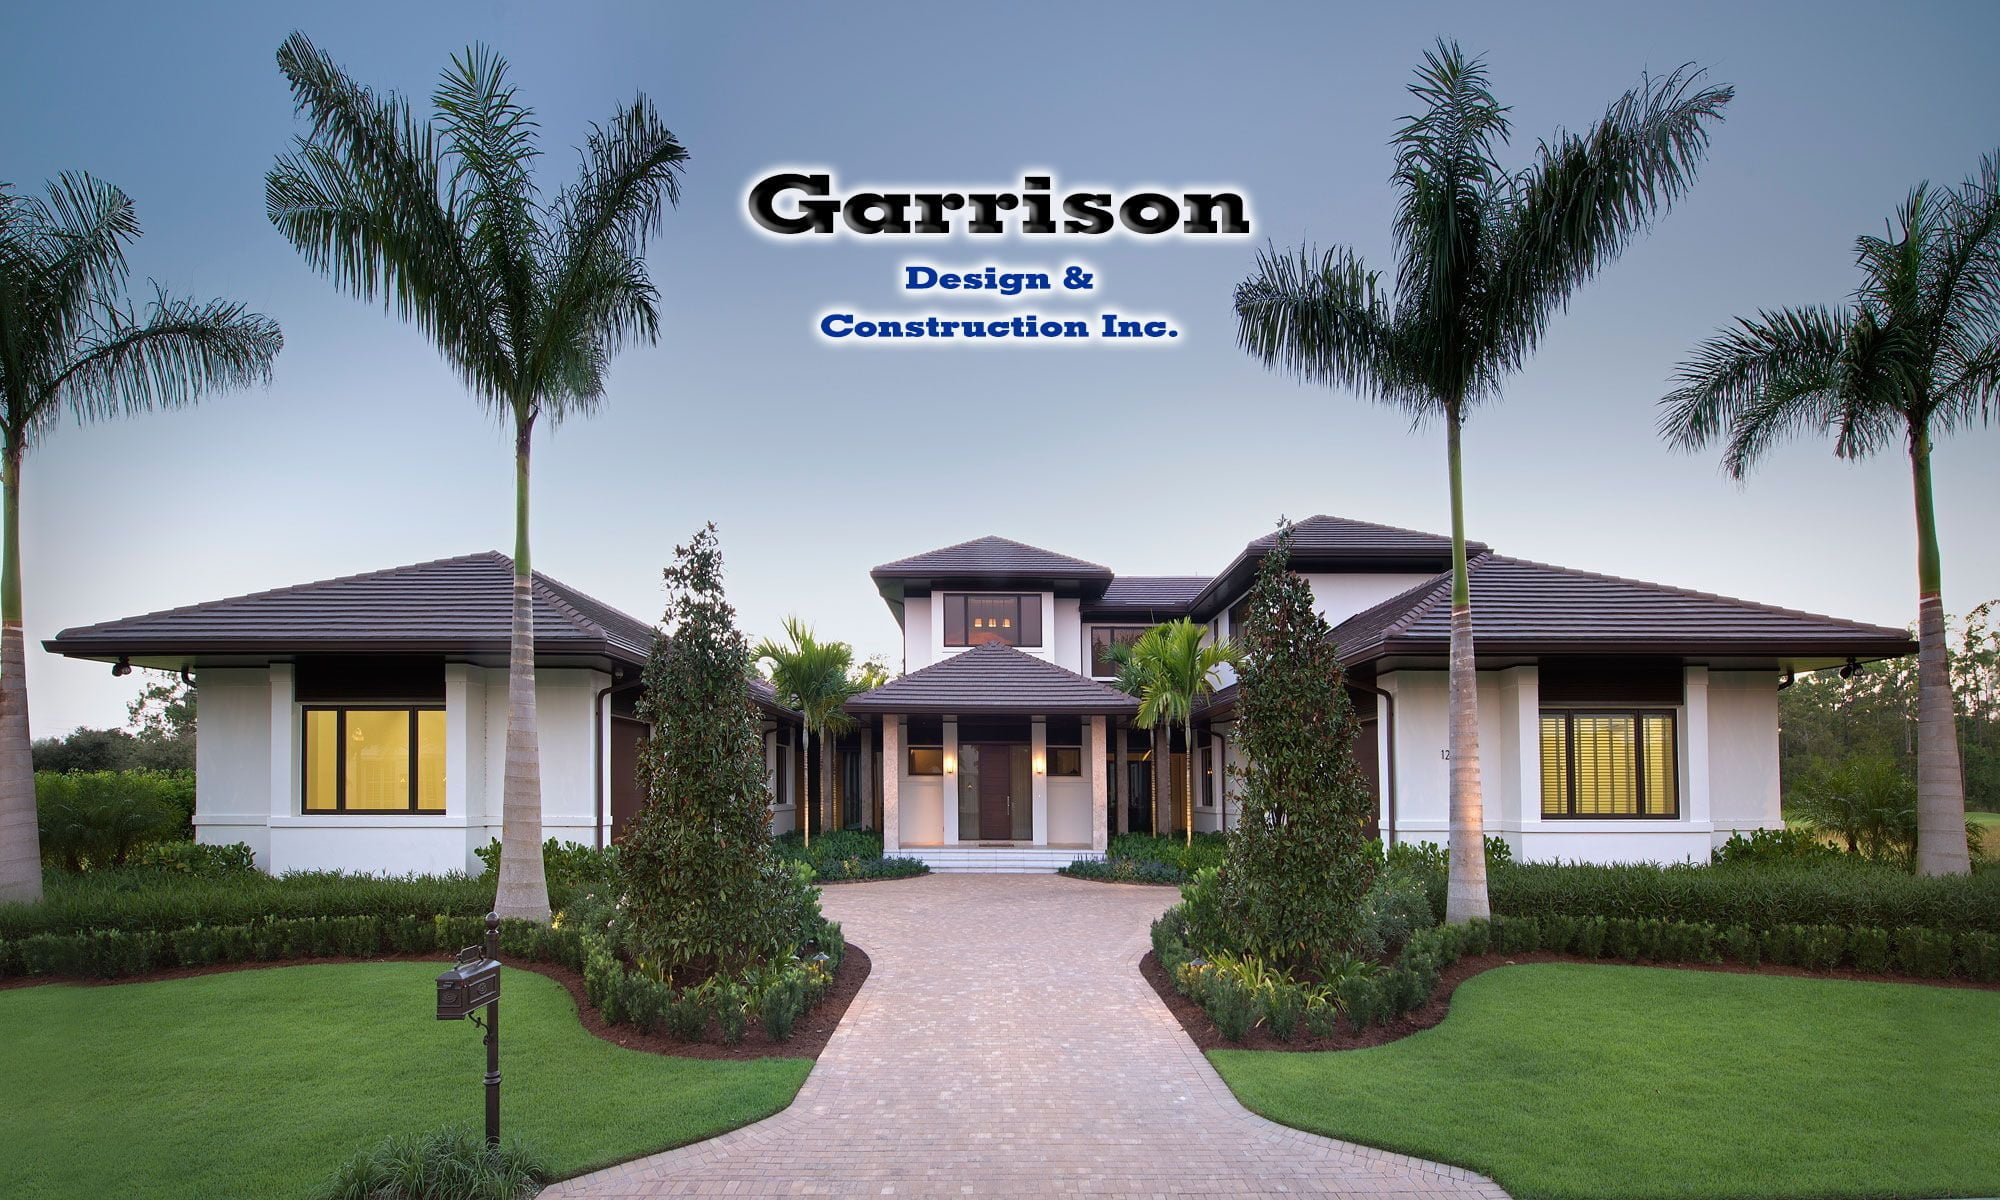 Garrison Design & Construction roof framing manufacturer